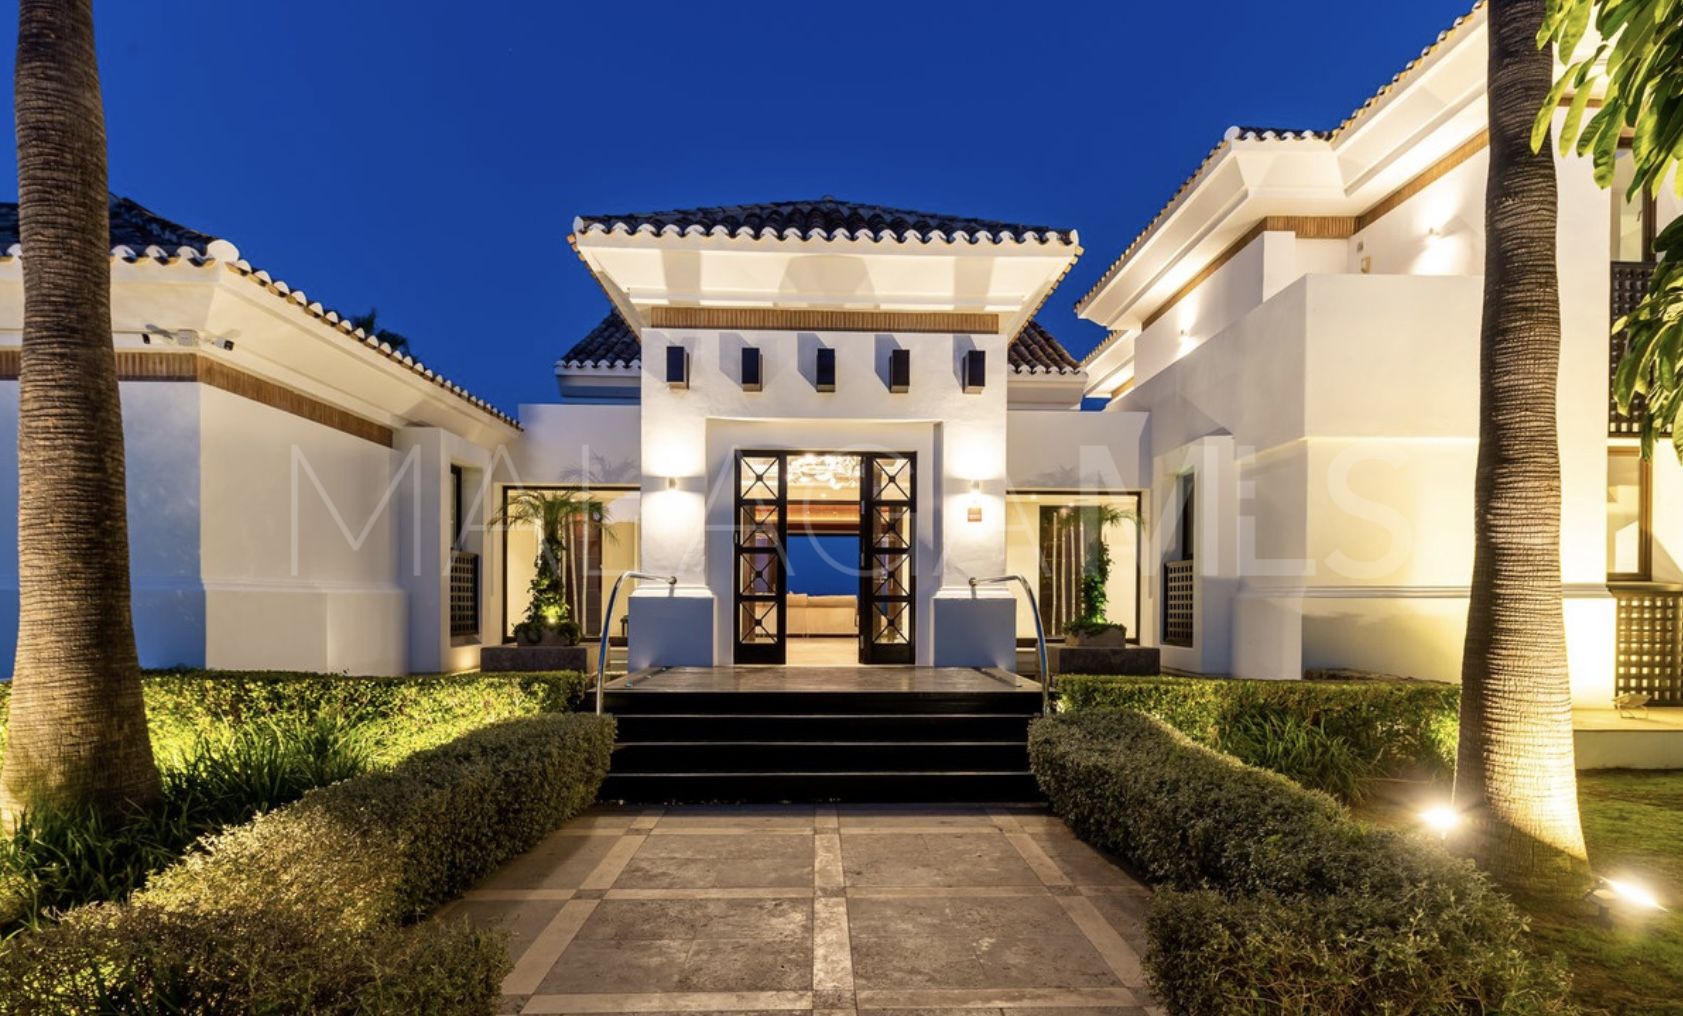 Villa with 5 bedrooms for sale in Los Flamingos